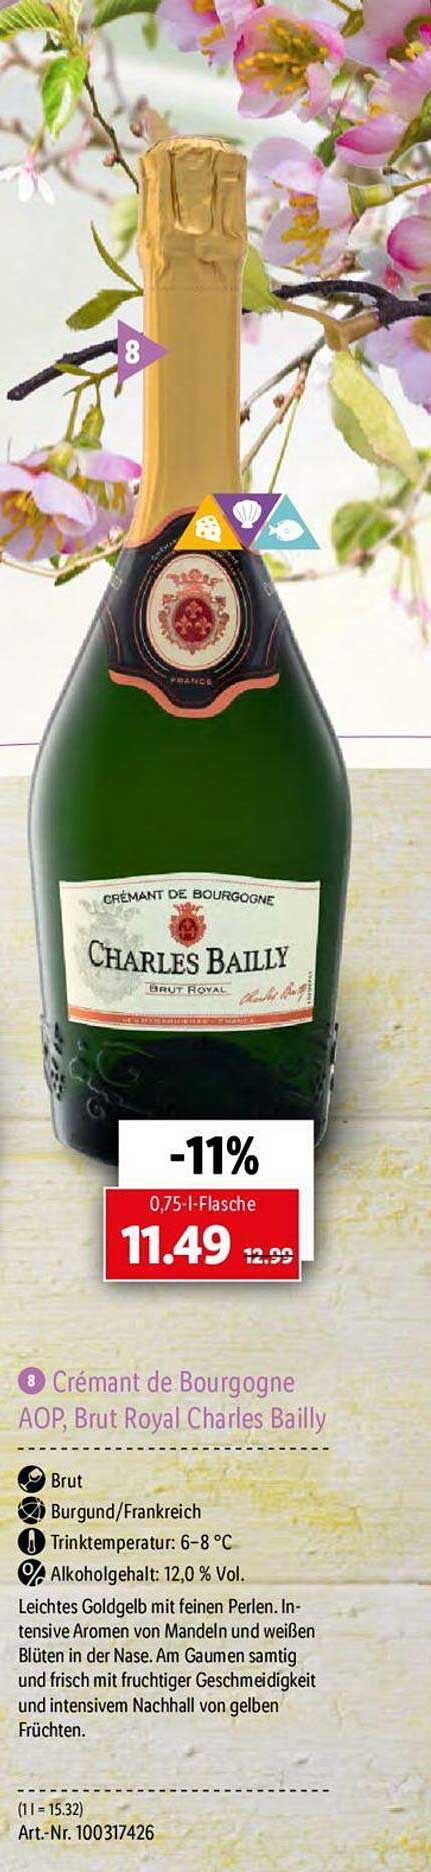 Cremant De Bourgogne Aop Brut Royal Charles Bailly Angebot bei Lidl